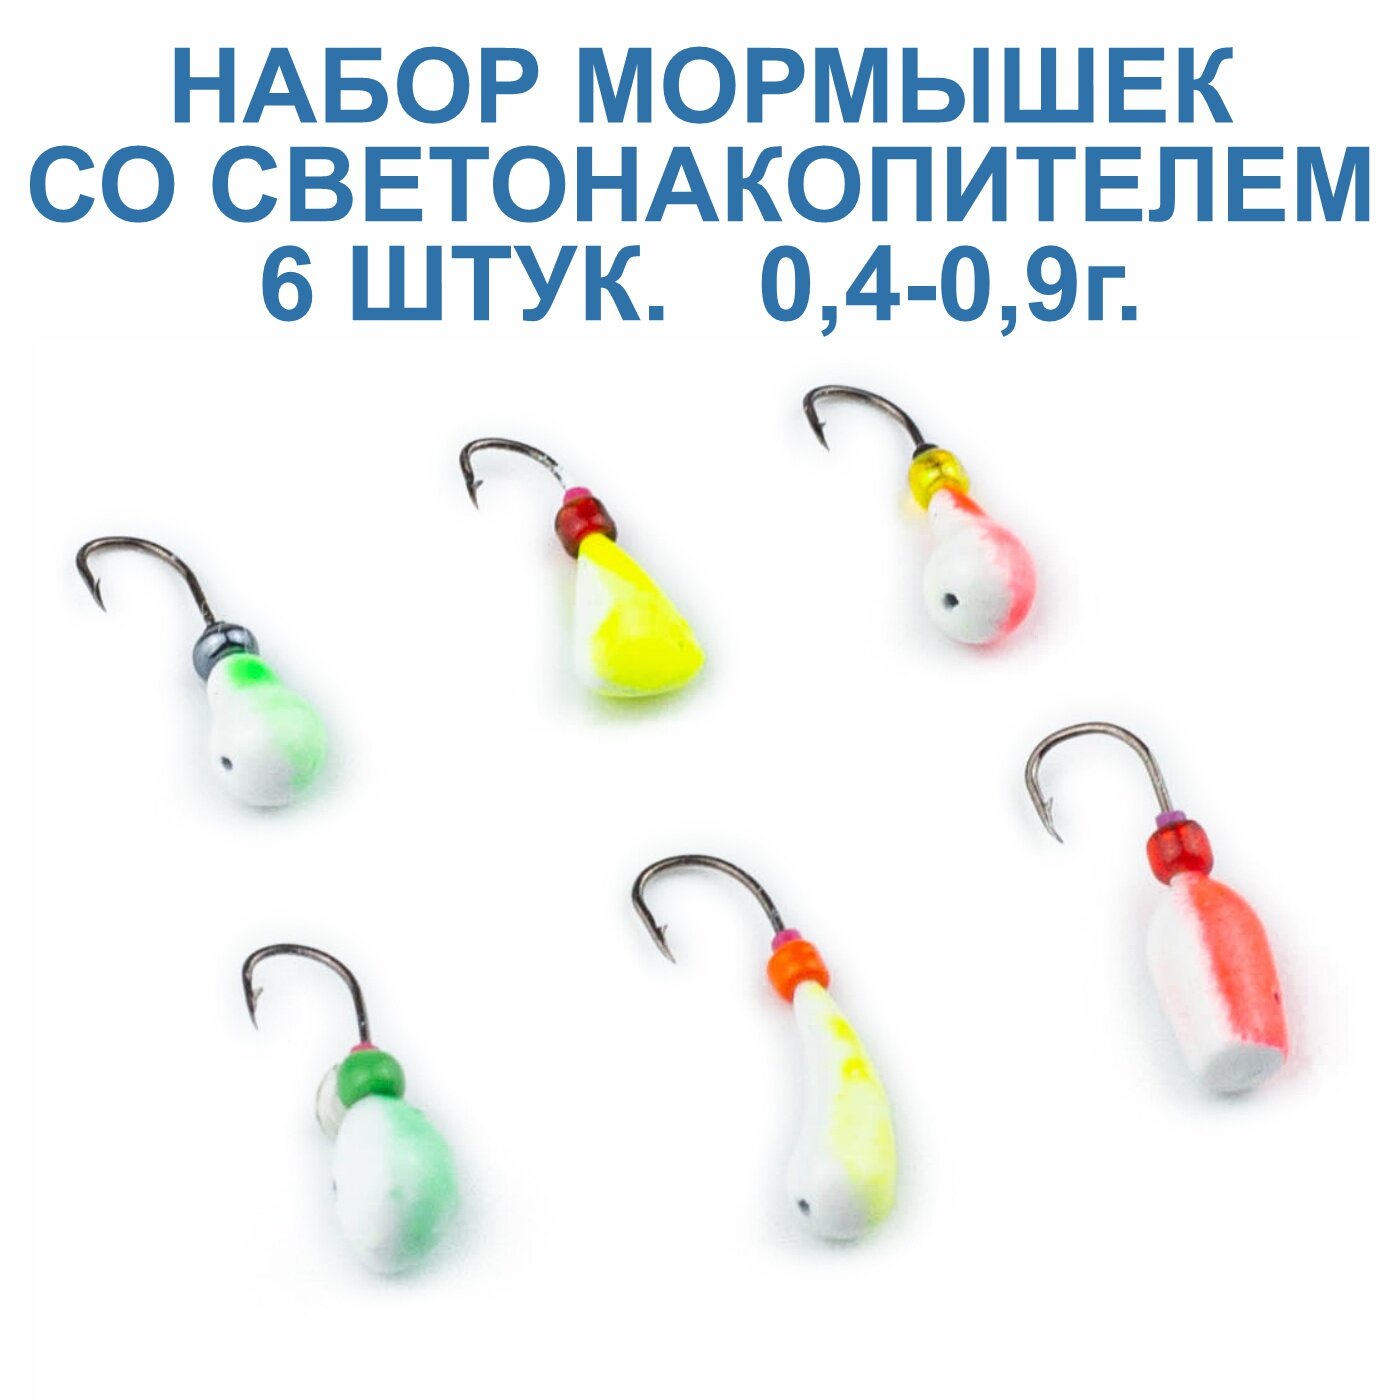 Мормышки для зимней и летней рыбалки пирс со светонакопителем, 0,4-0,9г, 6 штук.